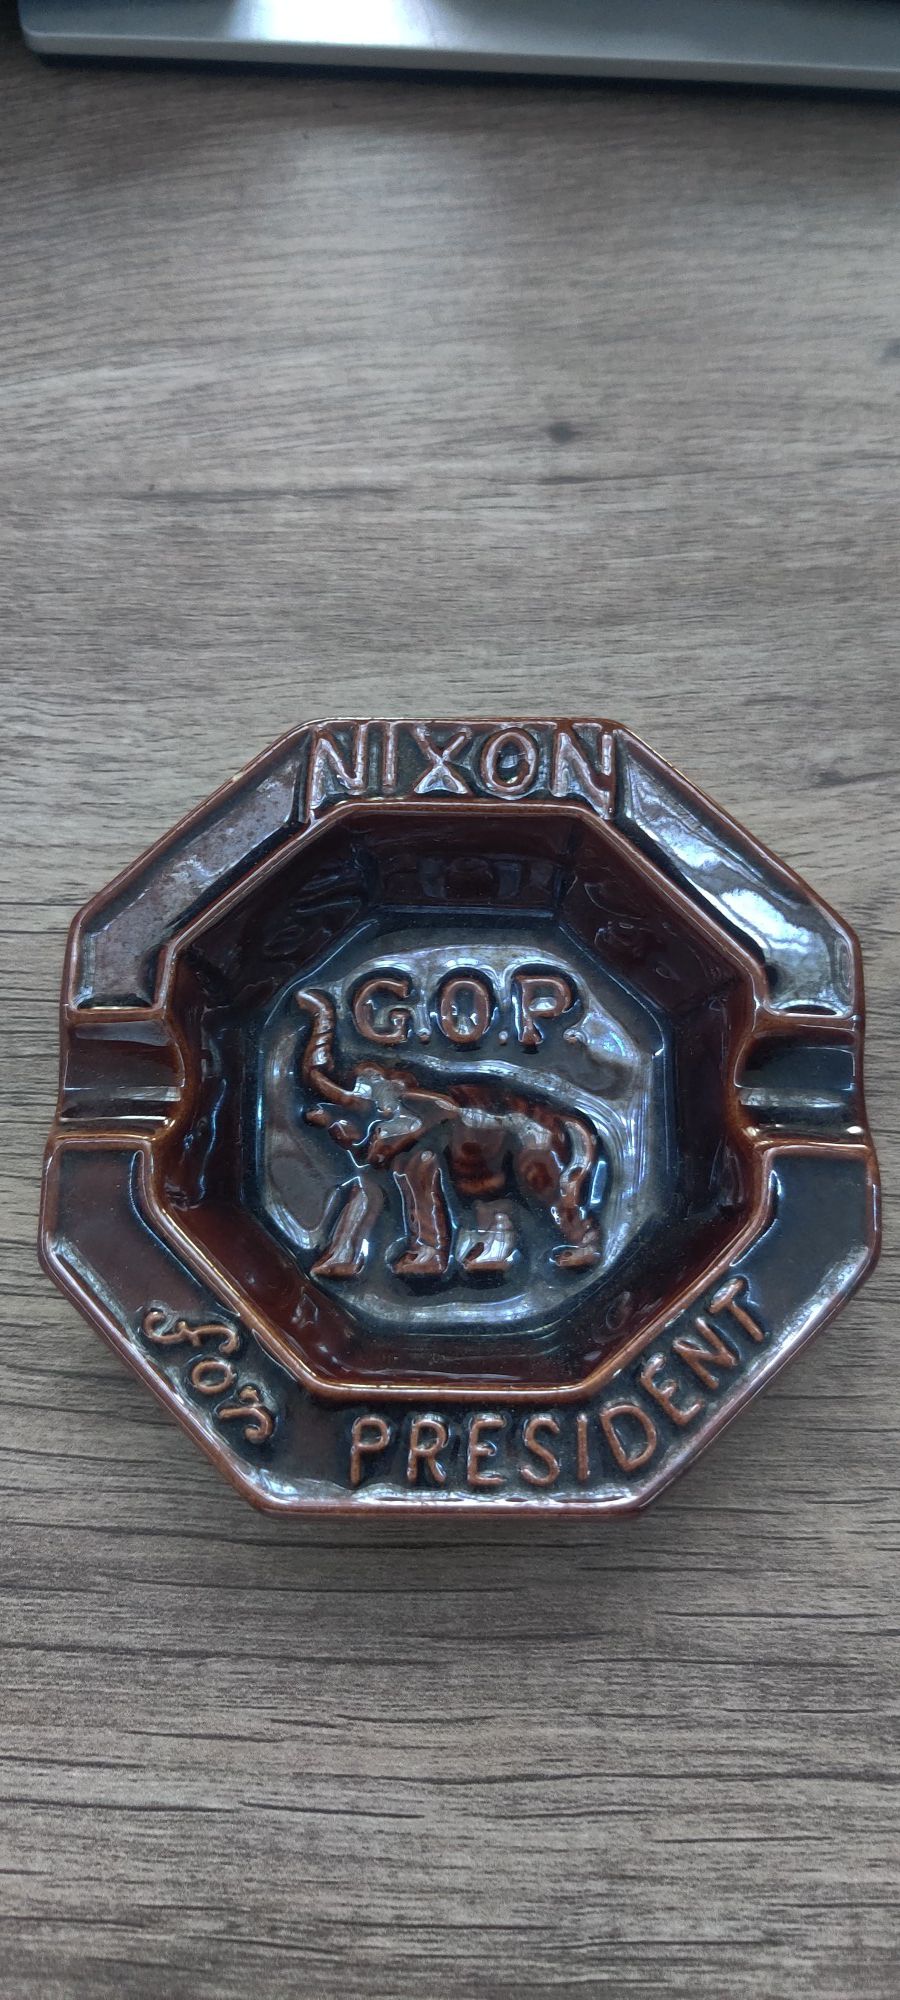 Nixon for President ashtray